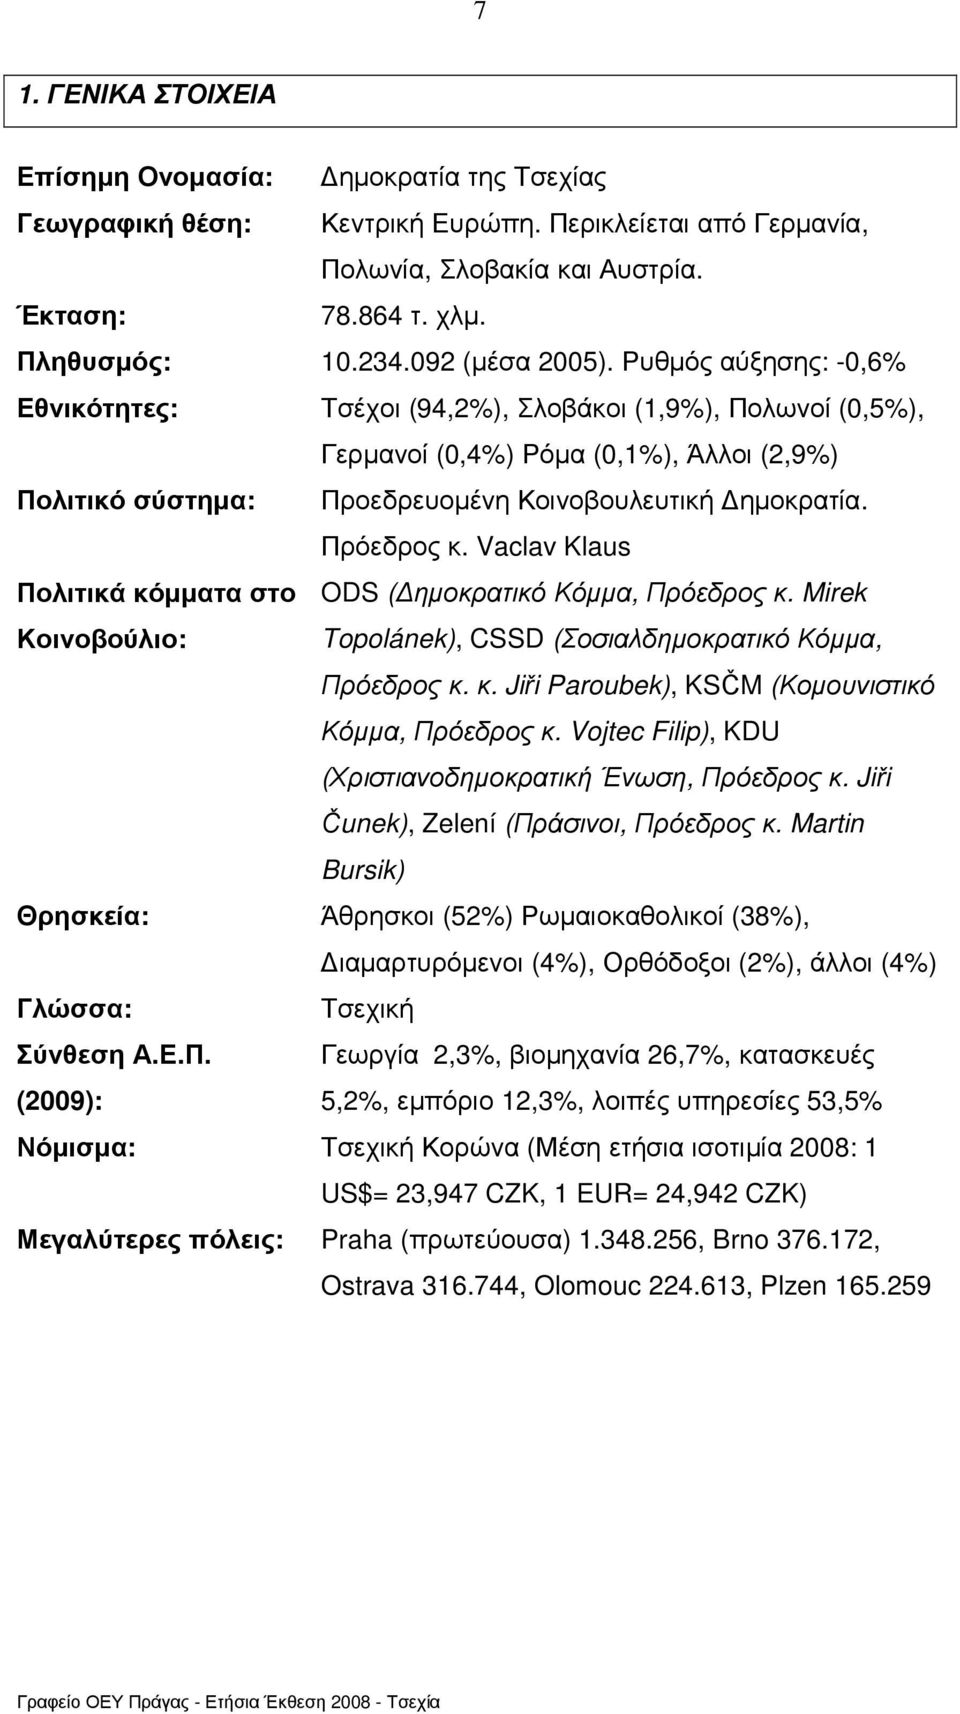 Ρυθµός αύξησης: -0,6% Εθνικότητες: Τσέχοι (94,2%), Σλοβάκοι (1,9%), Πολωνοί (0,5%), Γερµανοί (0,4%) Ρόµα (0,1%), Άλλοι (2,9%) Πολιτικό σύστηµα: Προεδρευοµένη Κοινοβουλευτική ηµοκρατία. Πρόεδρος κ.